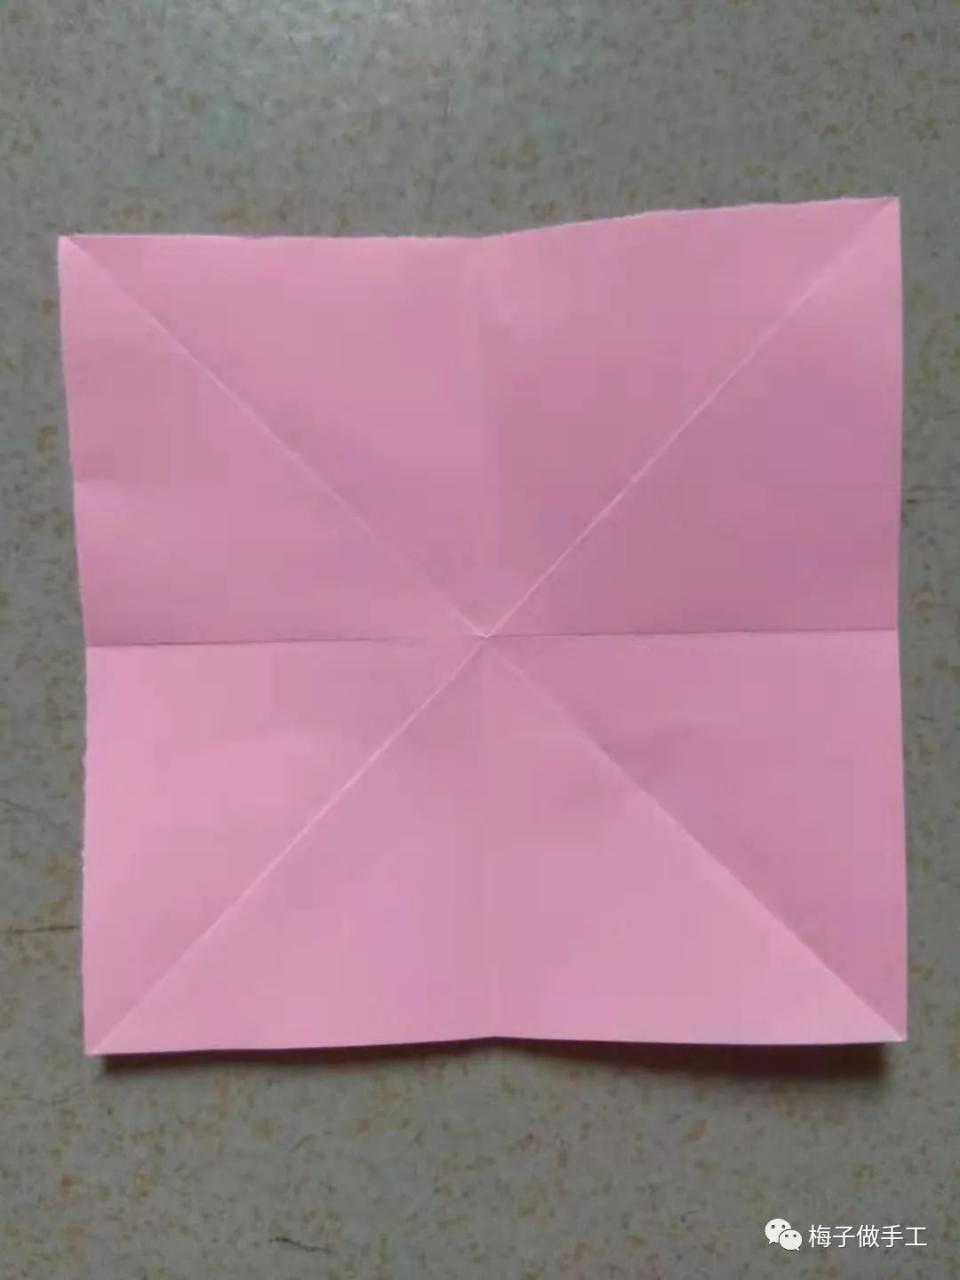 怎么用纸折蝴蝶结（蝴蝶结用纸怎么折？折法和步骤图解在这里，看完其实很简单）